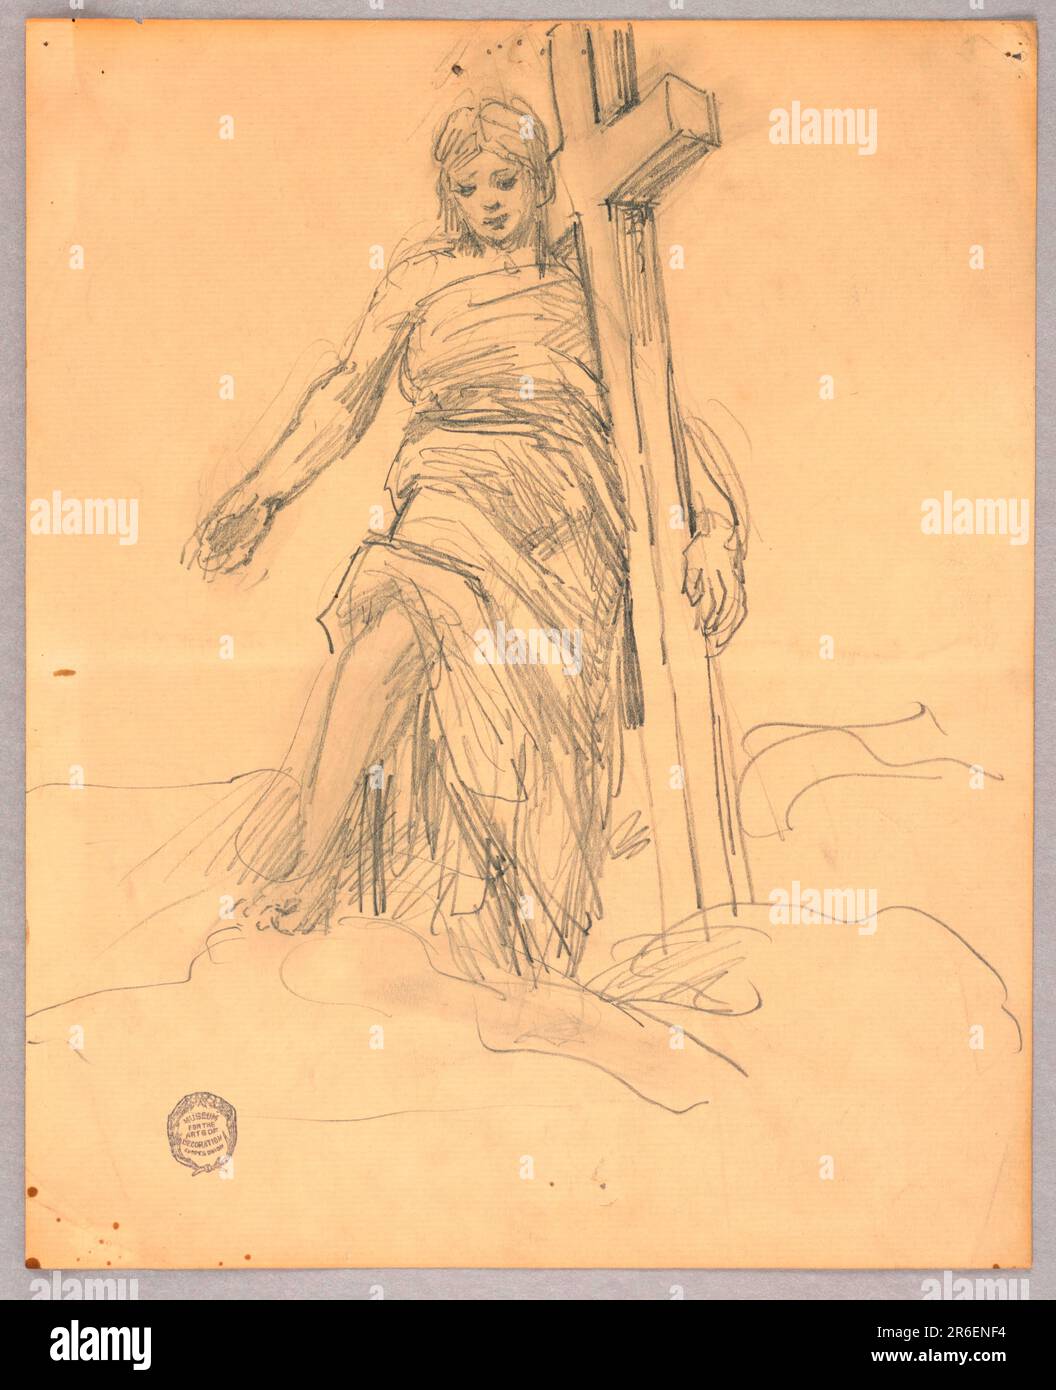 Die Figur steht mit dem linken Arm um ein Kreuz, dem rechten Arm ausgestreckt, dem rechten Fuß auf einer Wolke und dem Blick nach unten. Datum: Ca. 1895. Graphit auf liegendem Papier. Museum: Cooper Hewitt, Smithsonian Design Museum. Stockfoto